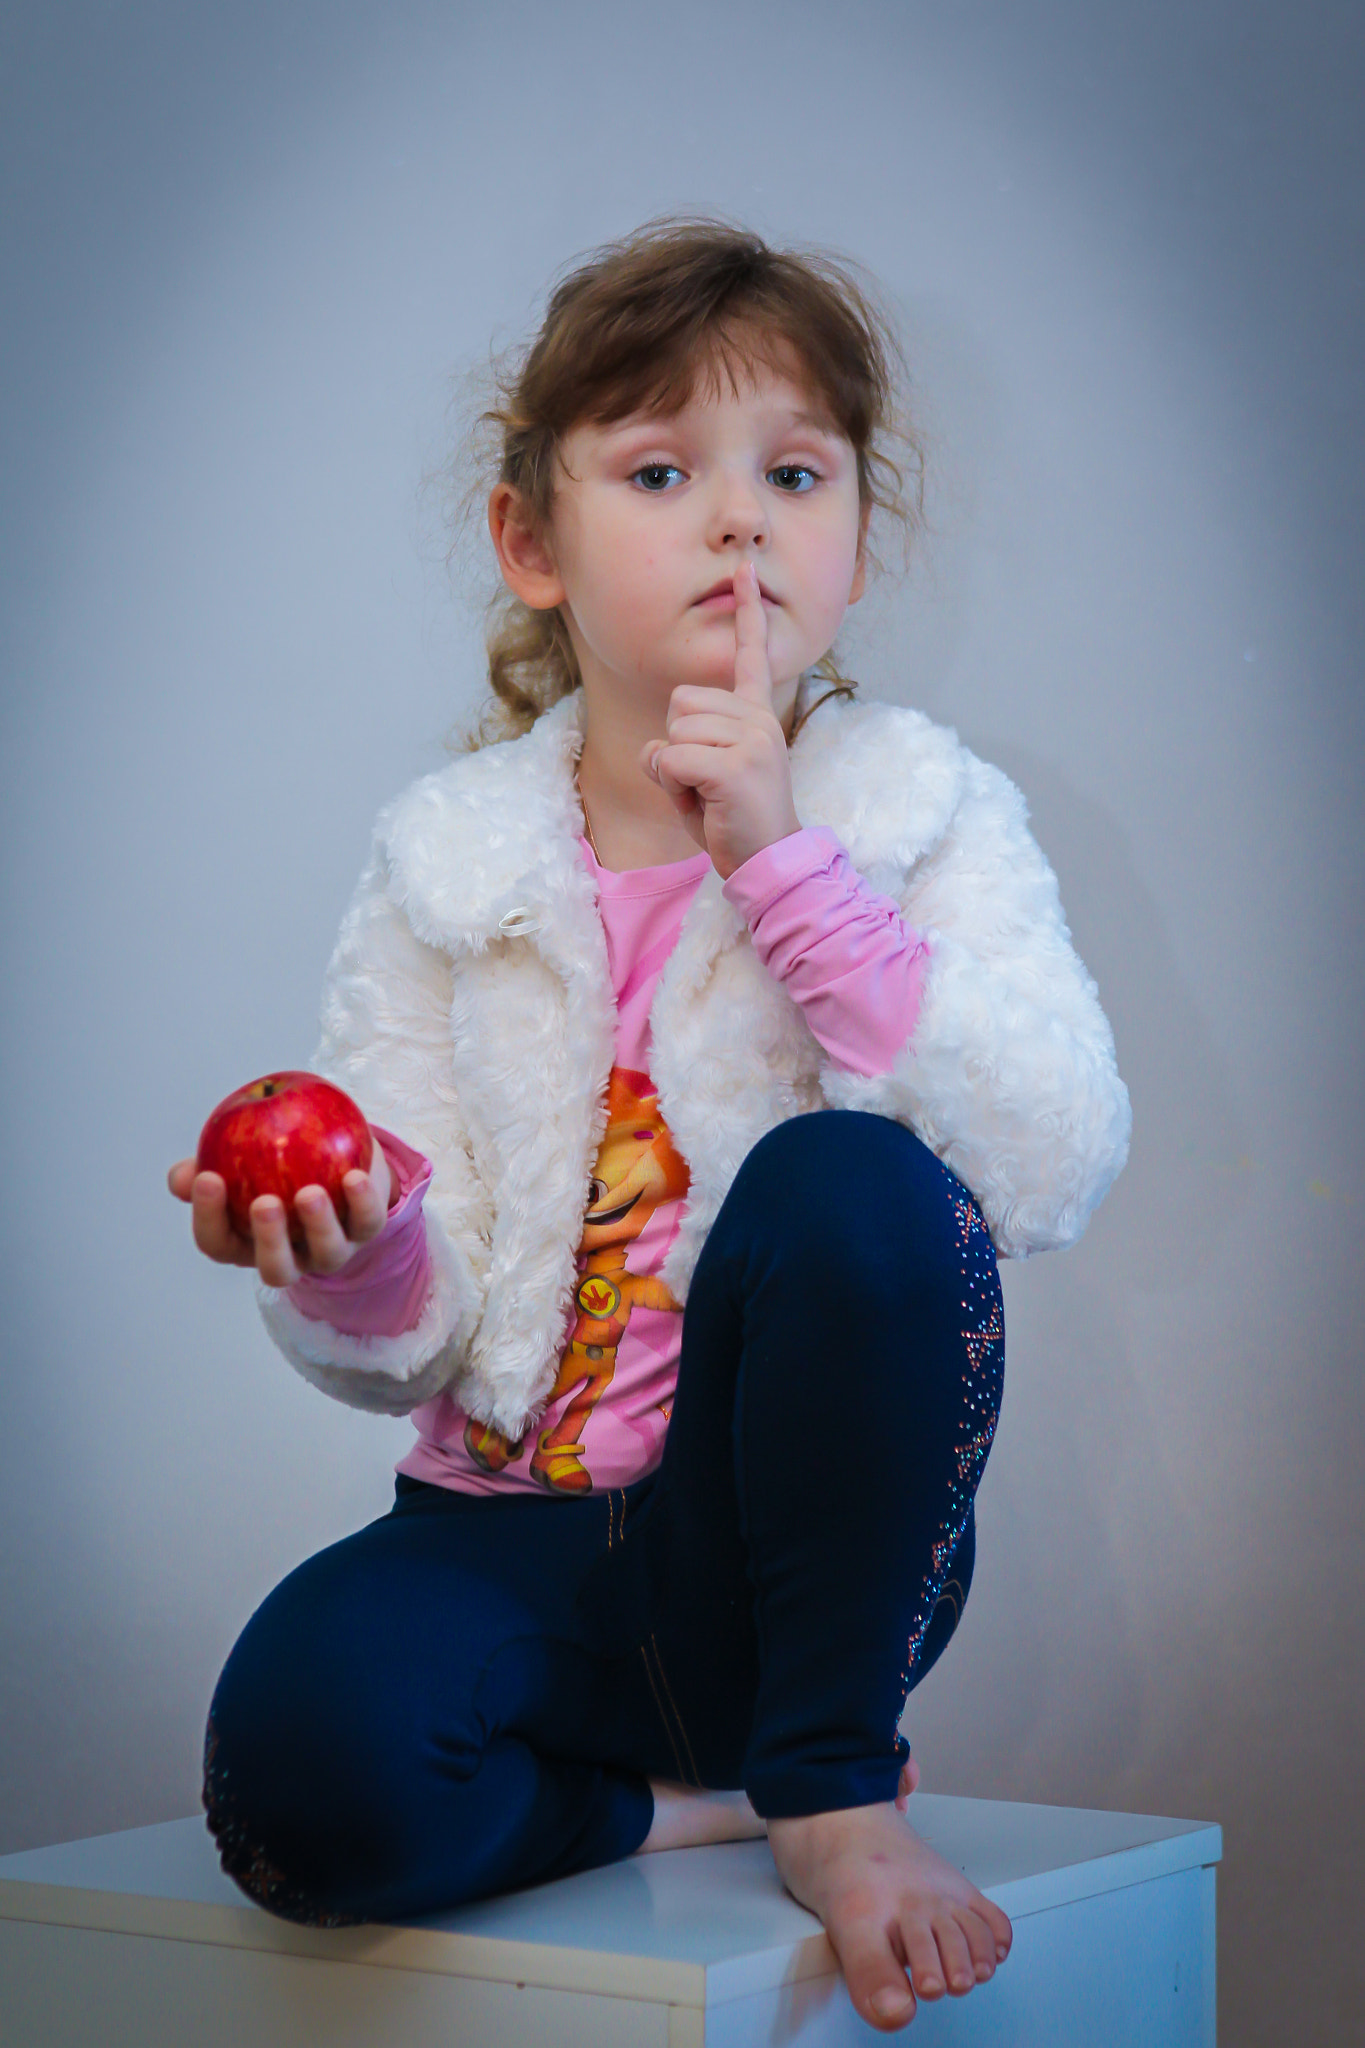 Canon EOS-1D Mark IV sample photo. A girl with an apple photography